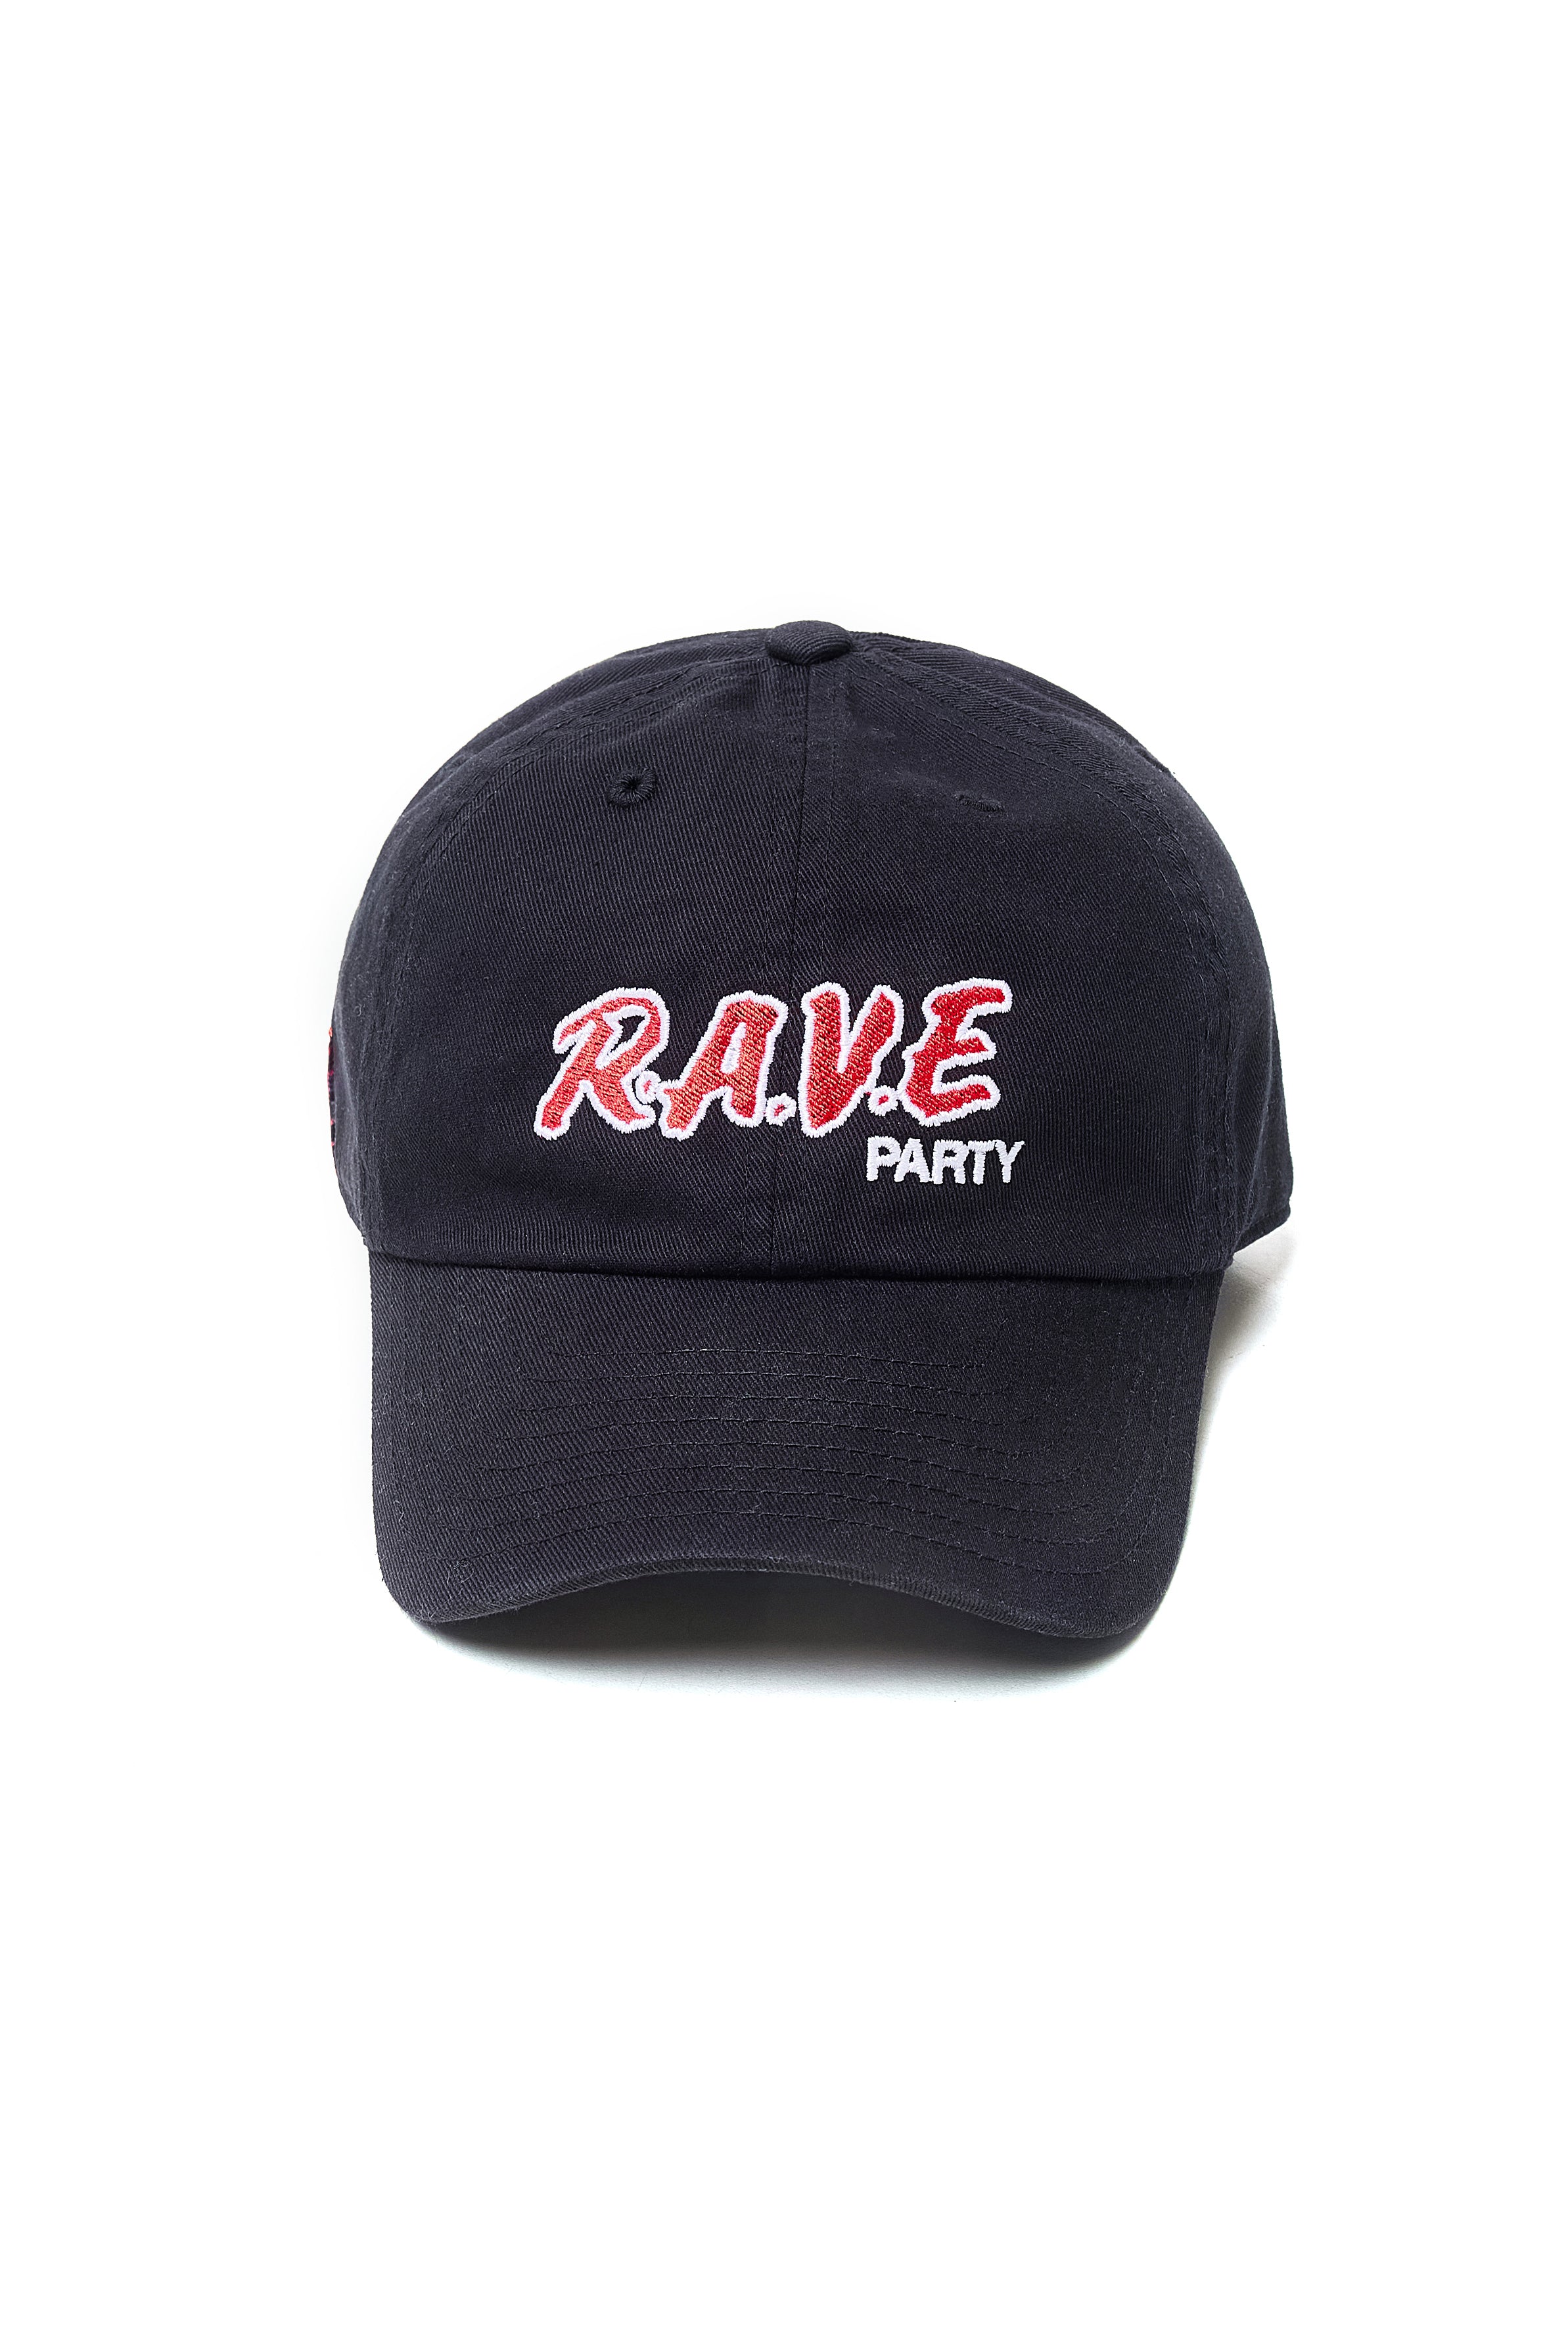 RAVE PARTY CAP